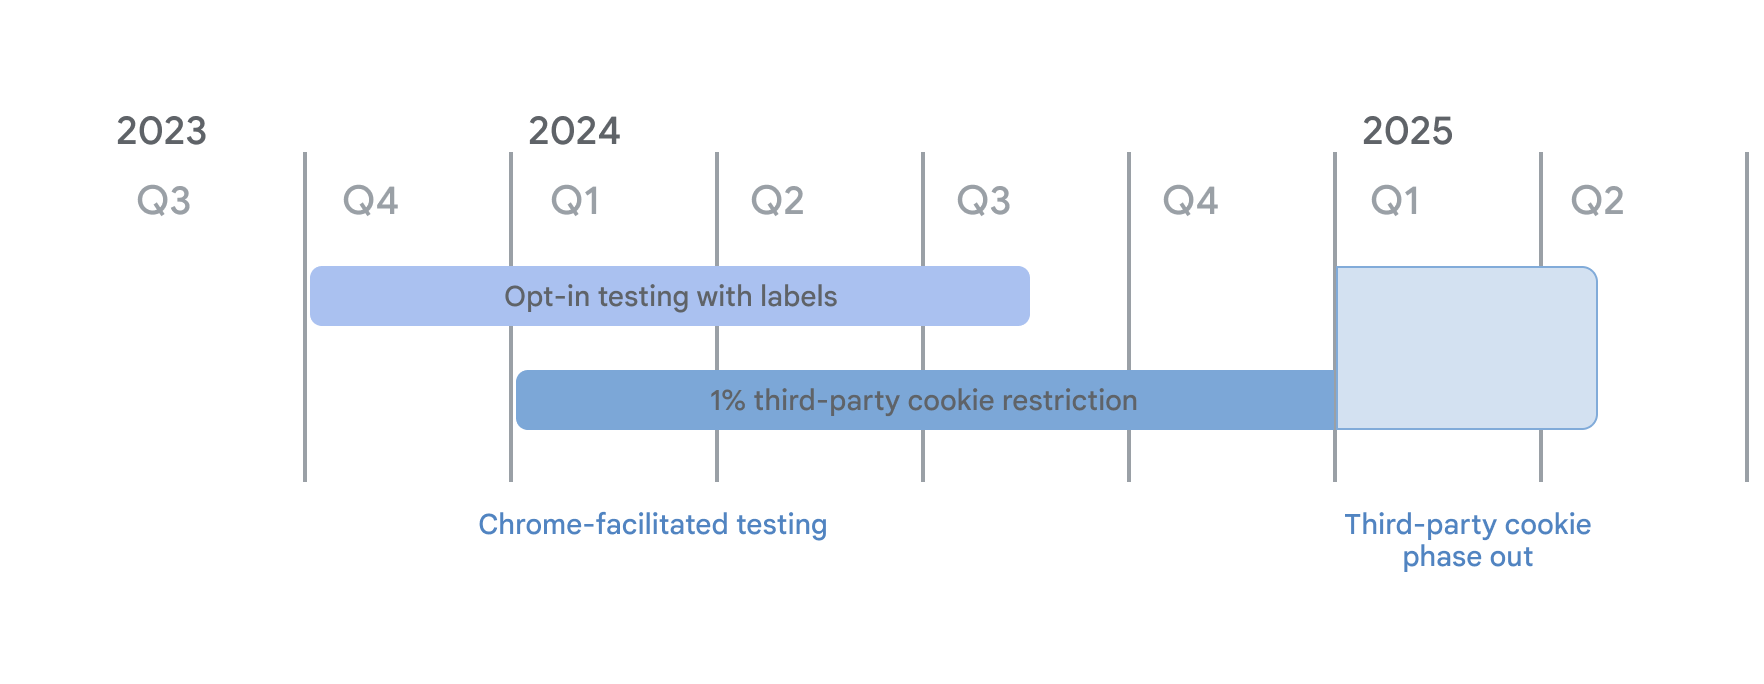 Zeitachse für die Deaktivierung von Drittanbieter-Cookies. Im Rahmen der von Chrome unterstützten Tests begannen die Opt-in-Tests mit dem Label-Modus im 4. Quartal 2023 und die Einschränkungen für Drittanbieter auf 1% der Nutzer ab dem 4. Januar 2024. Beide Gruppen laufen im 1. Quartal 2025 ab, wenn die Einstellung von Drittanbieter-Cookies beginnt.